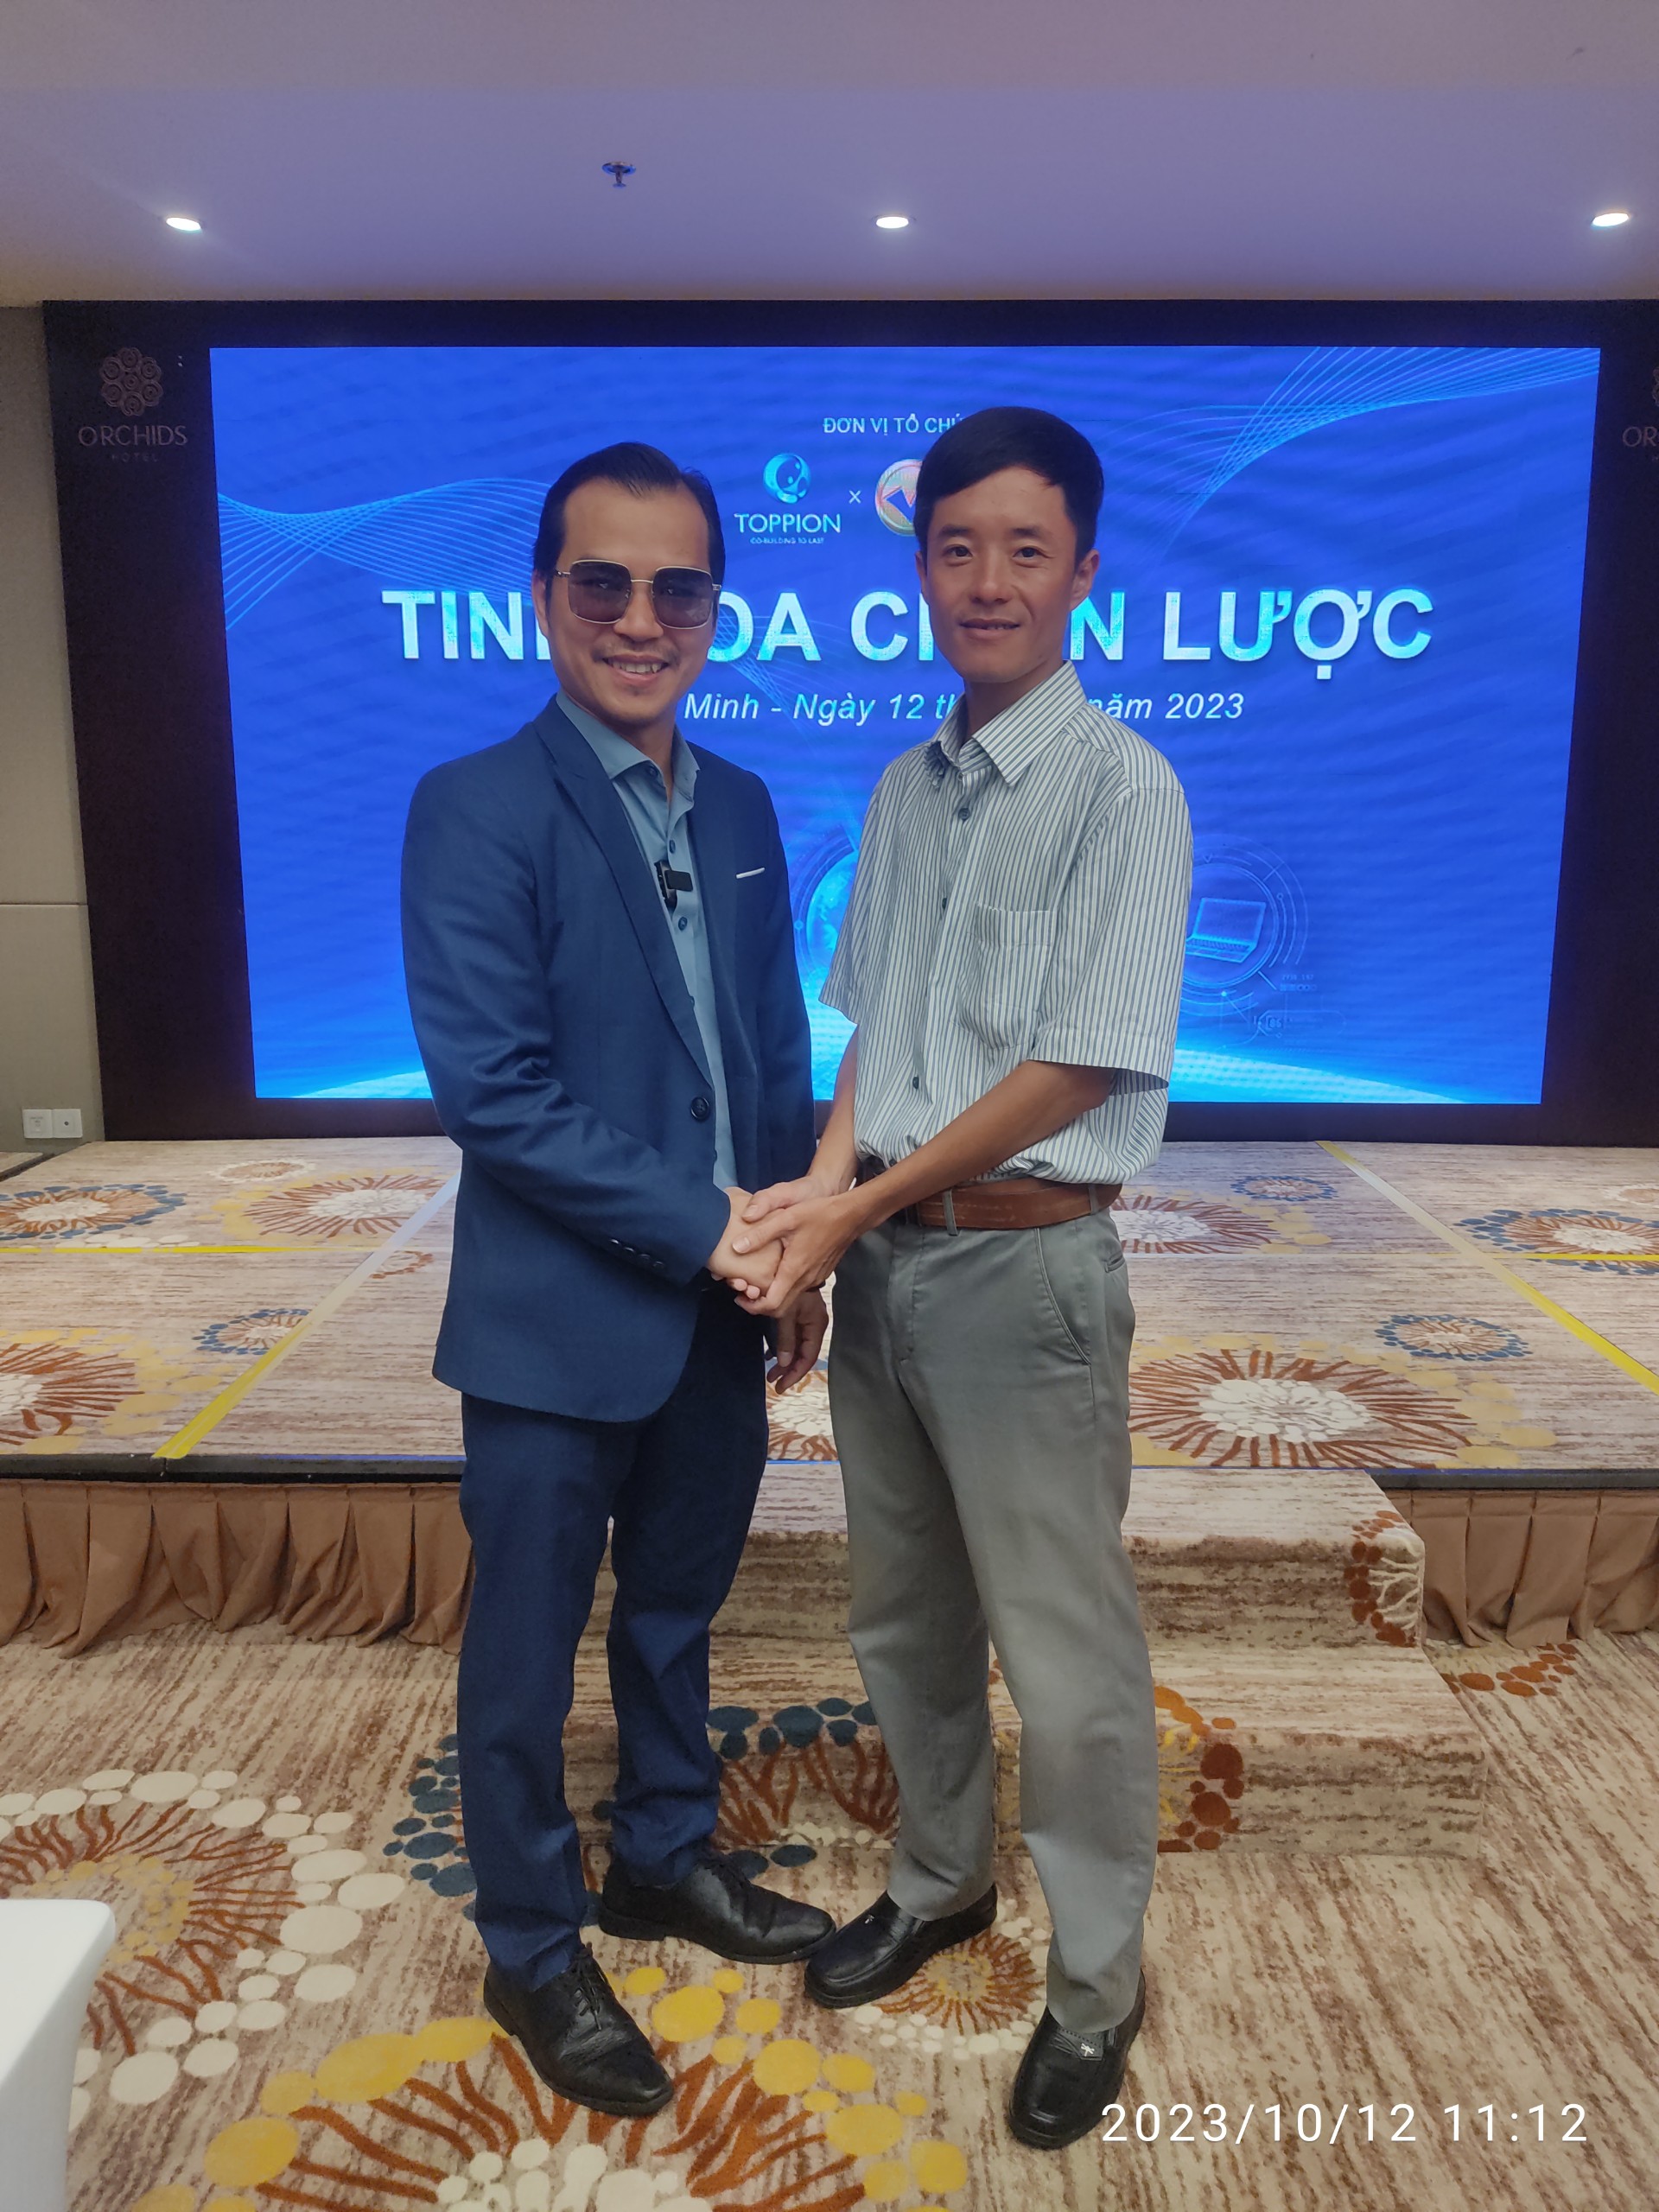 Cám ơn anh Loan Văn Sơn chủ tịch Toppion, đã chia sẻ tinh hoa chiến lược